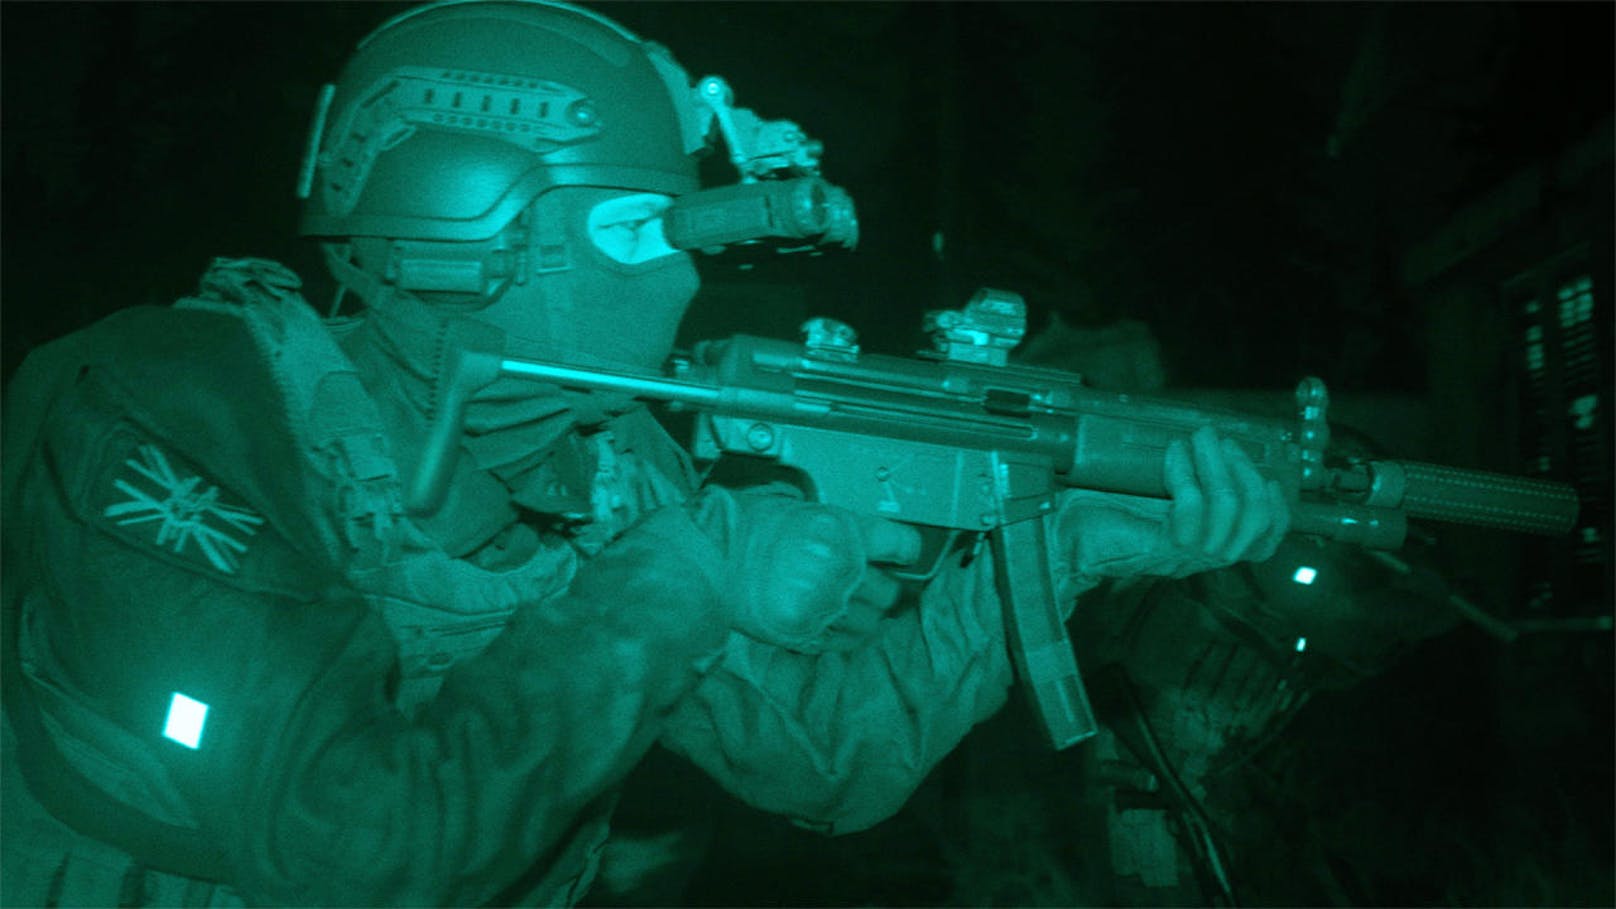 <b>30. Mai 2019:</b> Call of Duty: Modern Warfare ist zurück! Der brandneue Titel, der von Activision veröffentlicht und von Infinity Ward entwickelt wird, stürzt die Spieler in einen modernen Konflikt, wo in Sekundenbruchteilen gefällte Entscheidungen Einfluss auf die globalen Mächteverhältnisse haben können. Das neue Modern Warfare bietet eine einheitliche Erzählung über die Grenzen einer nervenaufreibenden, epischen Einzelspieler-Kampagne, einem actiongeladenen Multiplayer-Spielplatz und einem neuen kooperativen Spielerlebnis hinweg. Call of Duty: Modern Warfare erscheint weltweit voraussichtlich am 25. Oktober auf PlayStation 4, Xbox One und PC. <a href="https://www.youtube.com/watch?v=v1EfwAp3dEI&feature=youtu.be">Jetzt den Reveal-Trailer anschauen!</a>